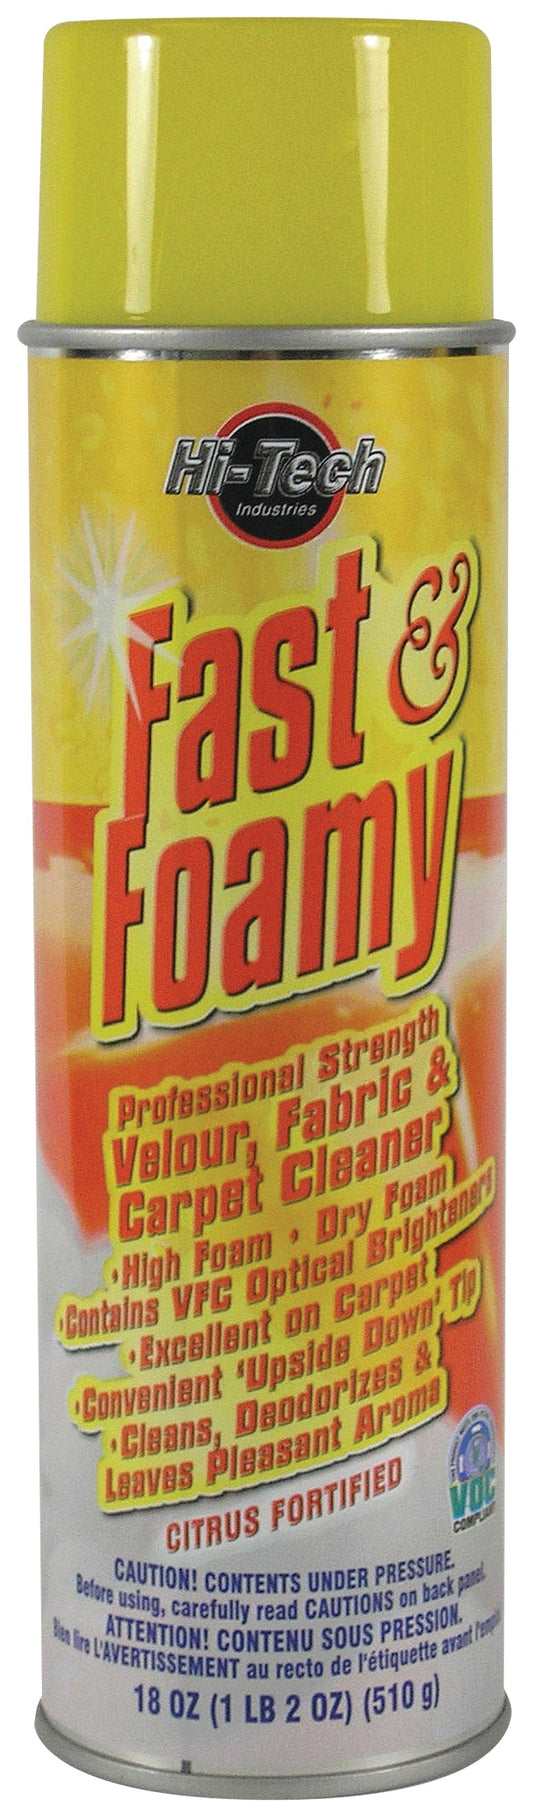 Fast & Foamy Carpet Cleaner